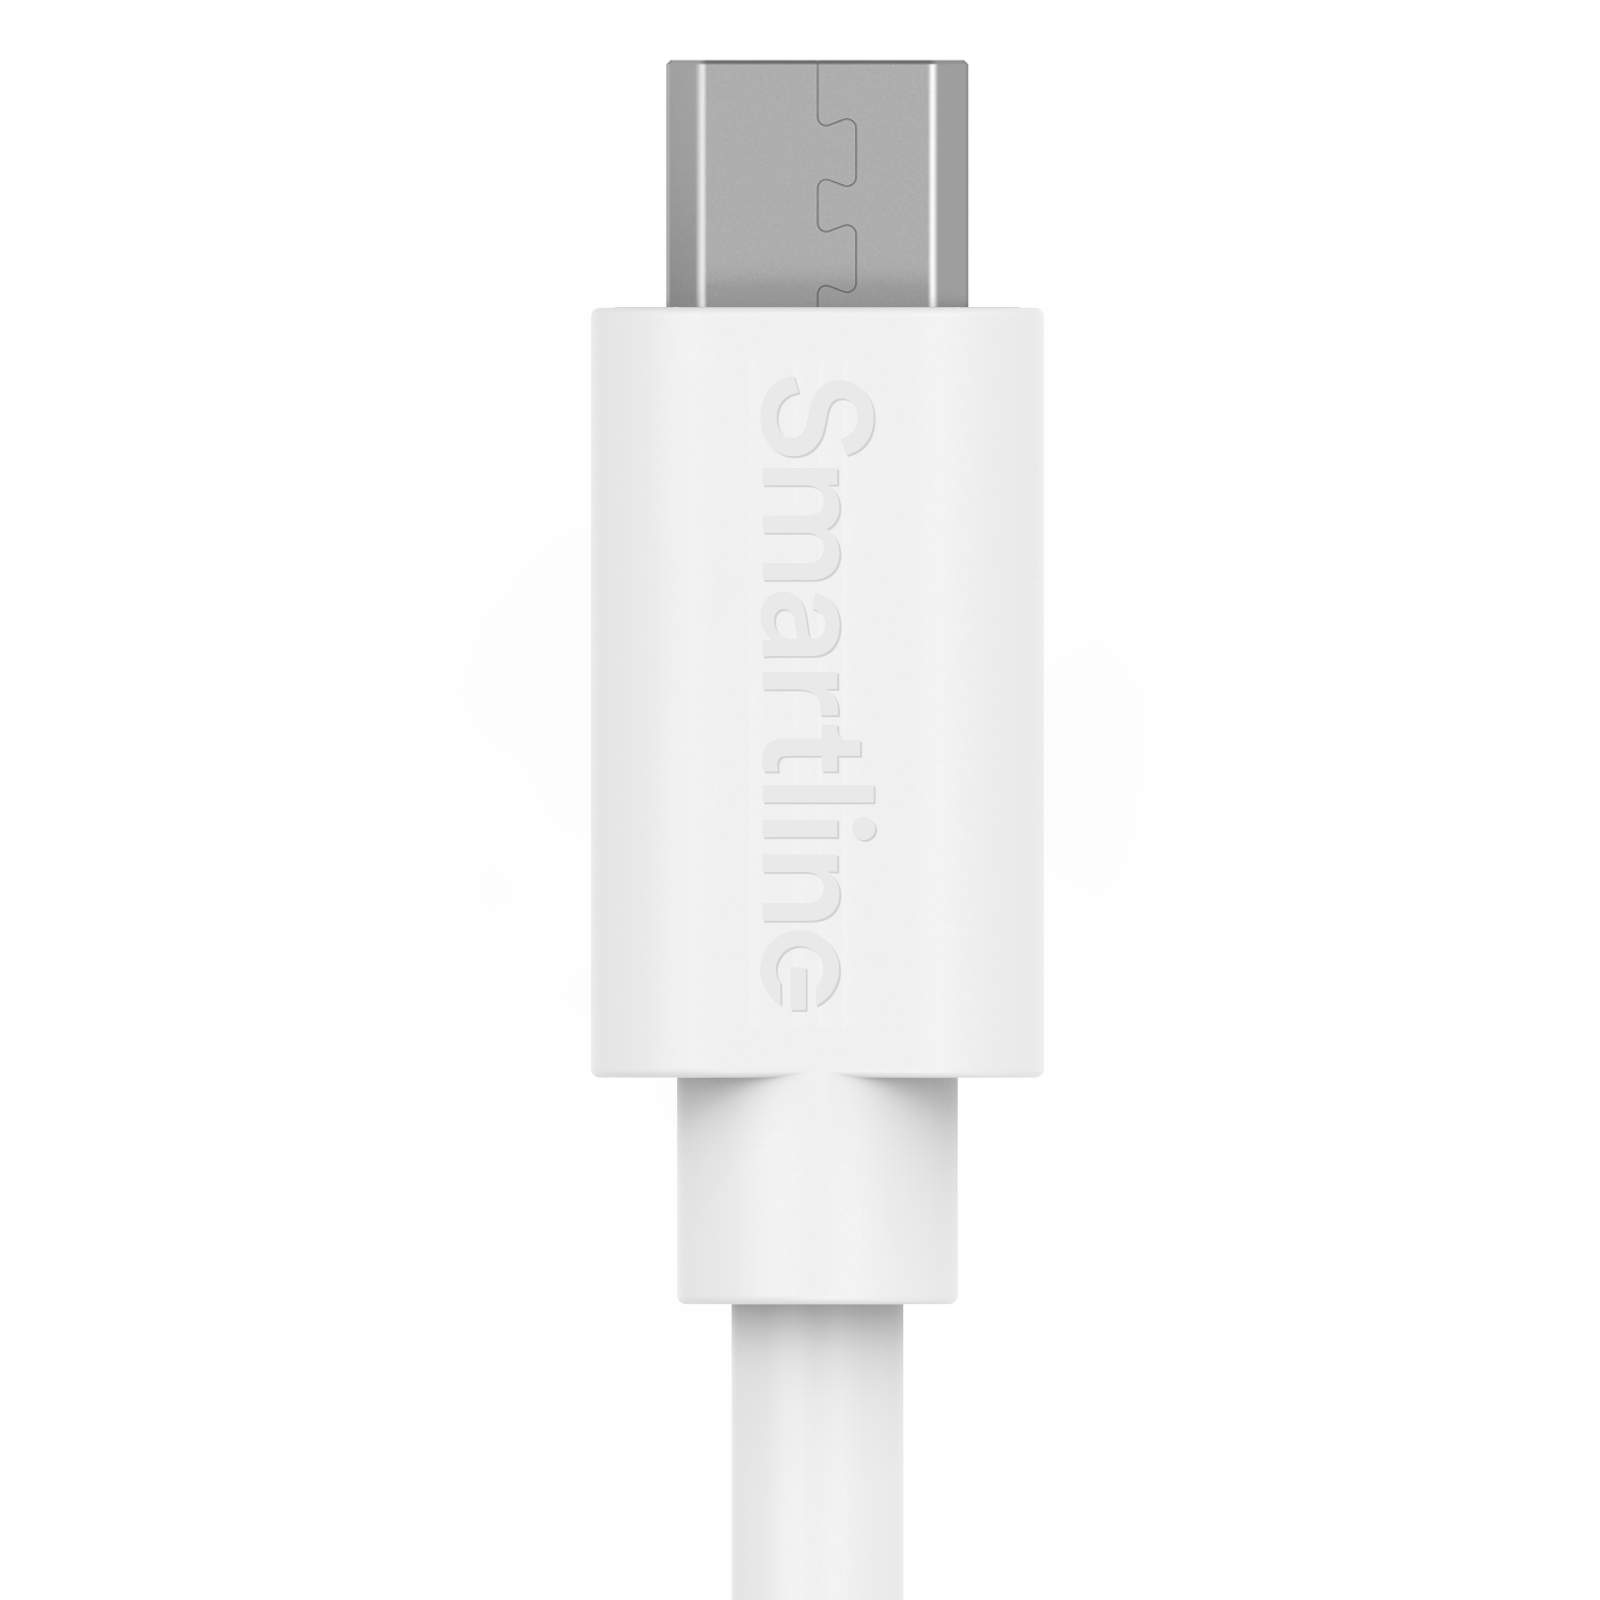 USB-kabel MicroUSB 1m Vit